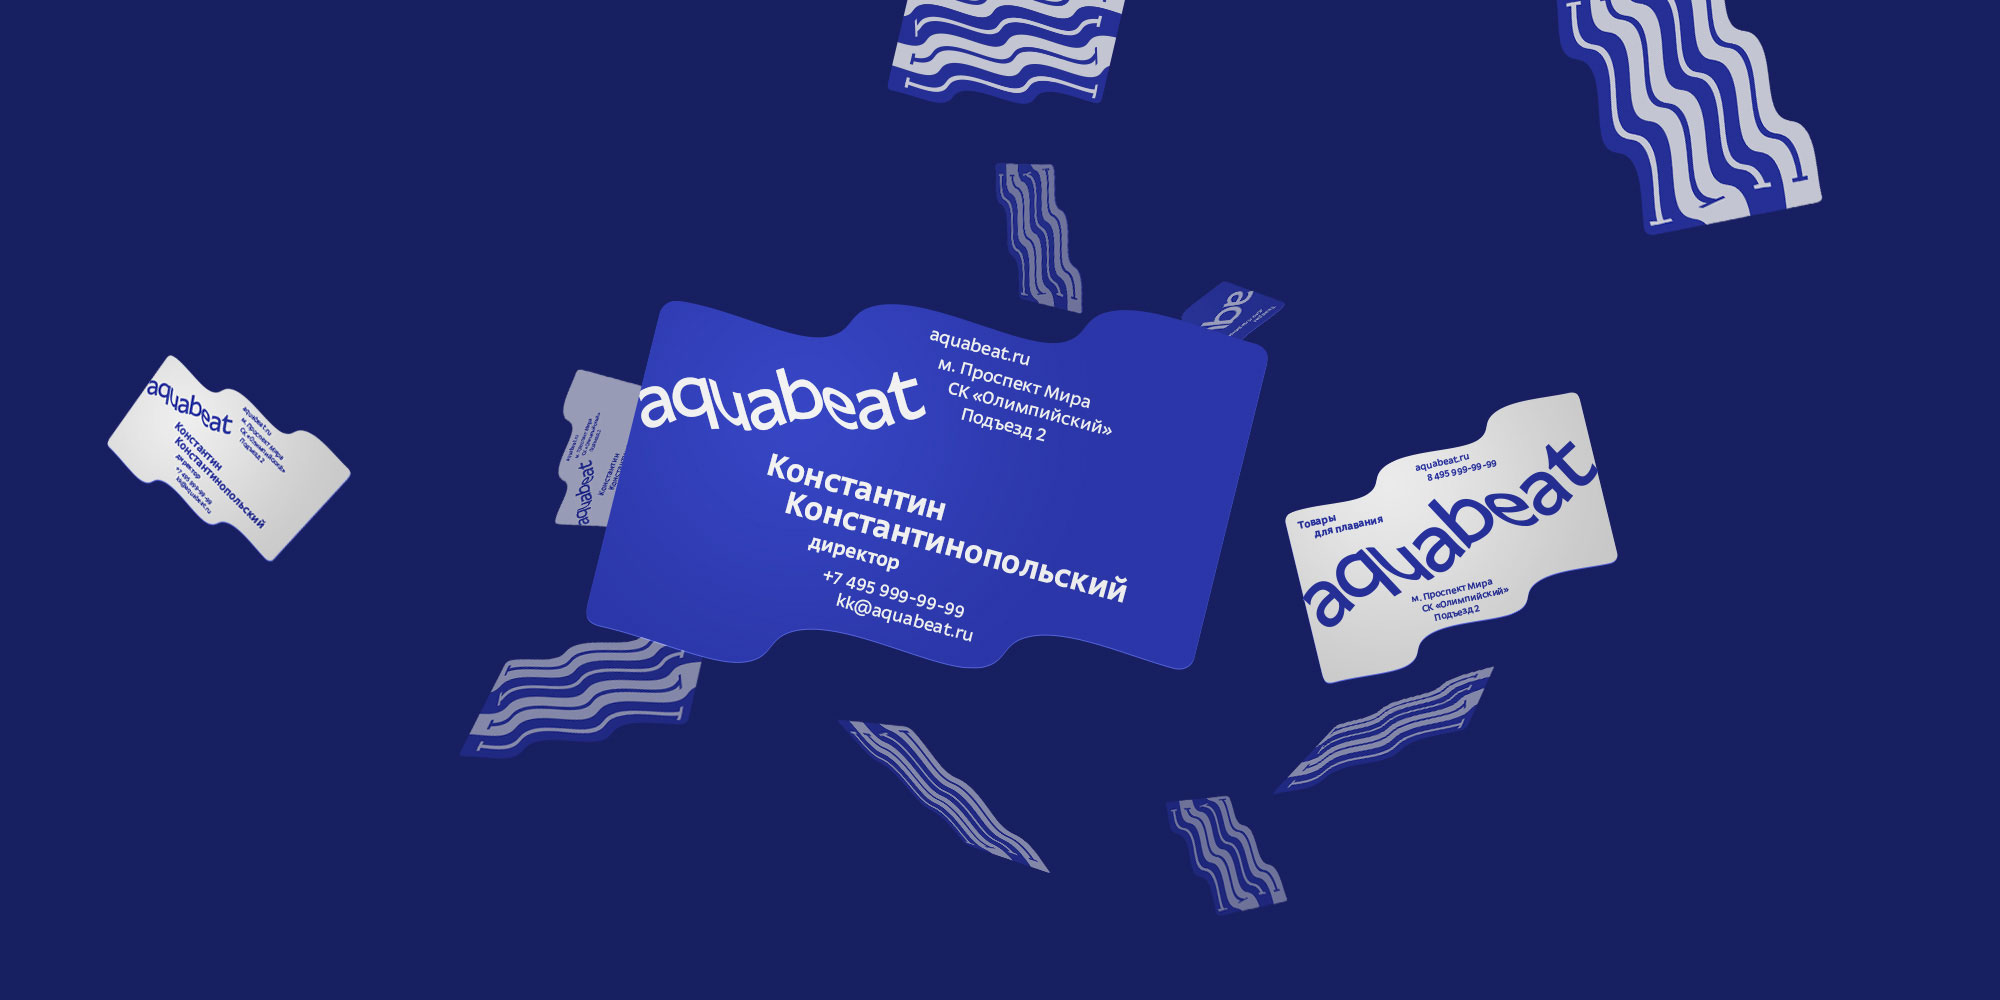 aquabeat cards